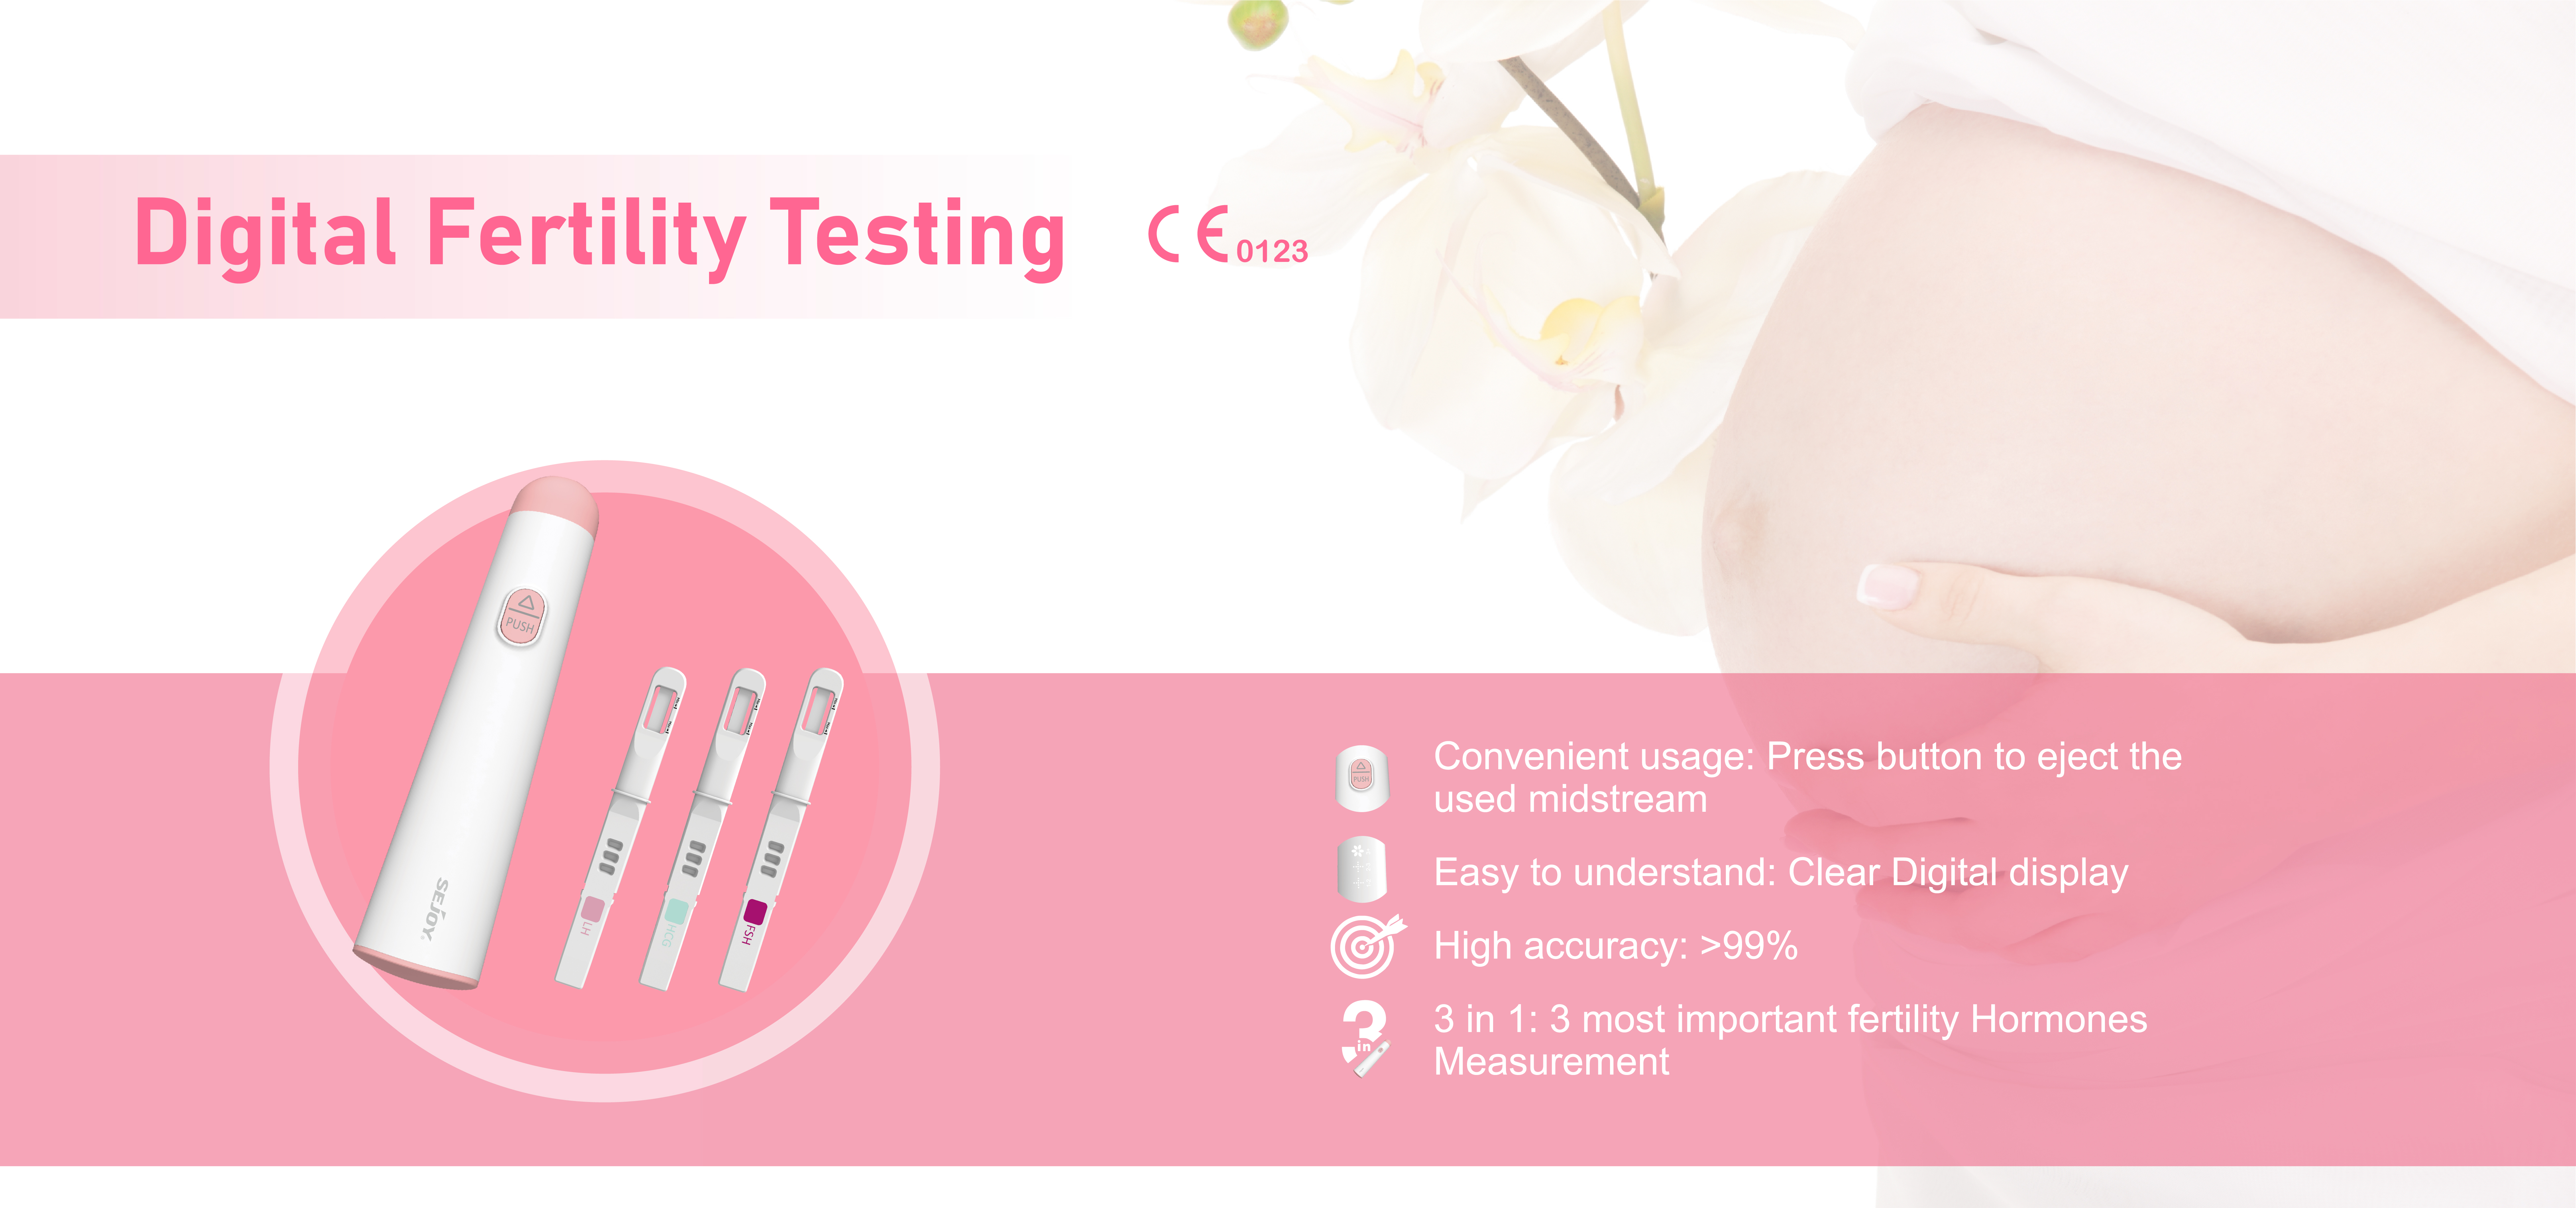 Digitalni sistem za testiranje plodnosti